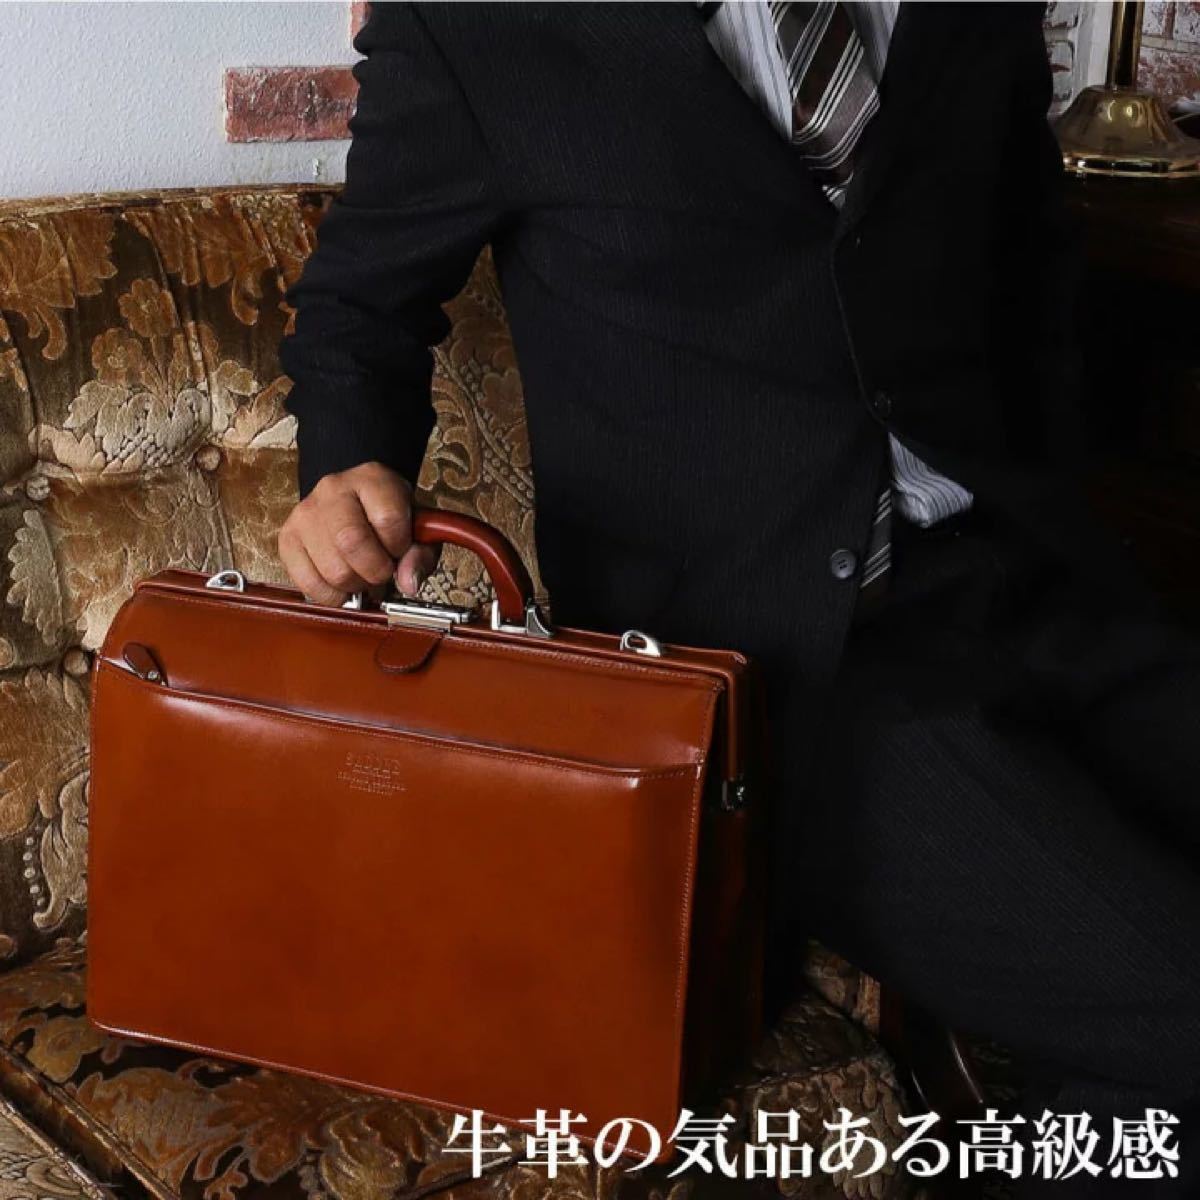 まとめ割引対象 牛革 ダレスバッグ 日本製 本革 ビジネスバッグ 22304 A4 豊岡製鞄 